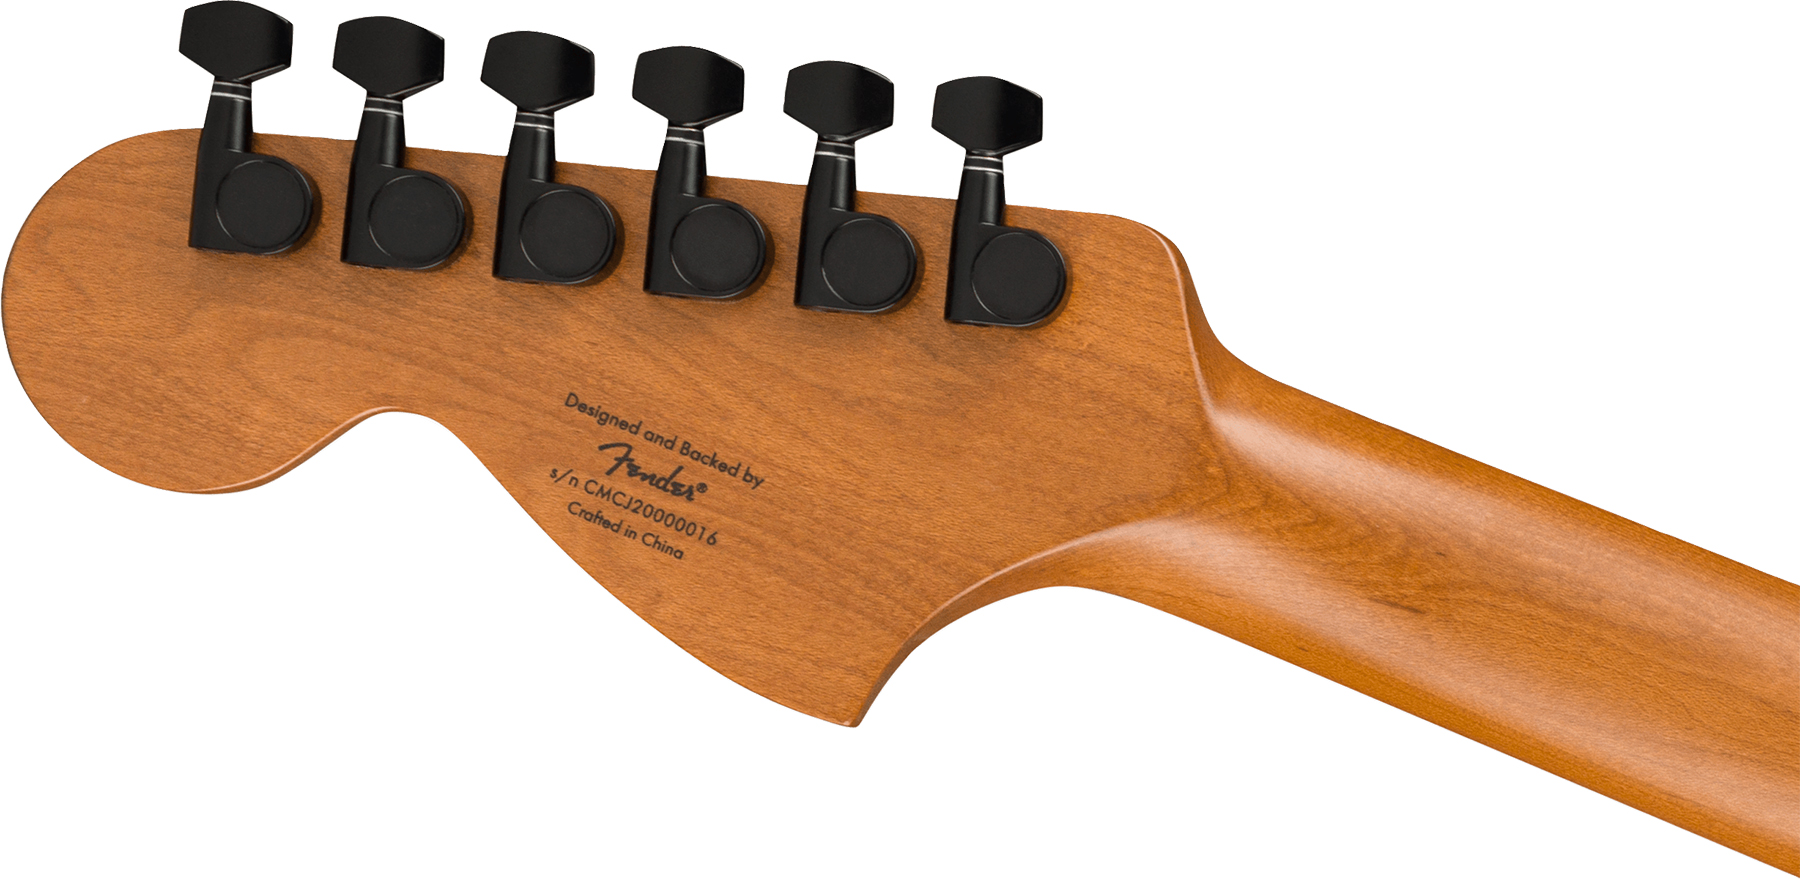 Squier Strat Contemporary Special Sss Trem Mn - Black - Guitarra eléctrica con forma de str. - Variation 3